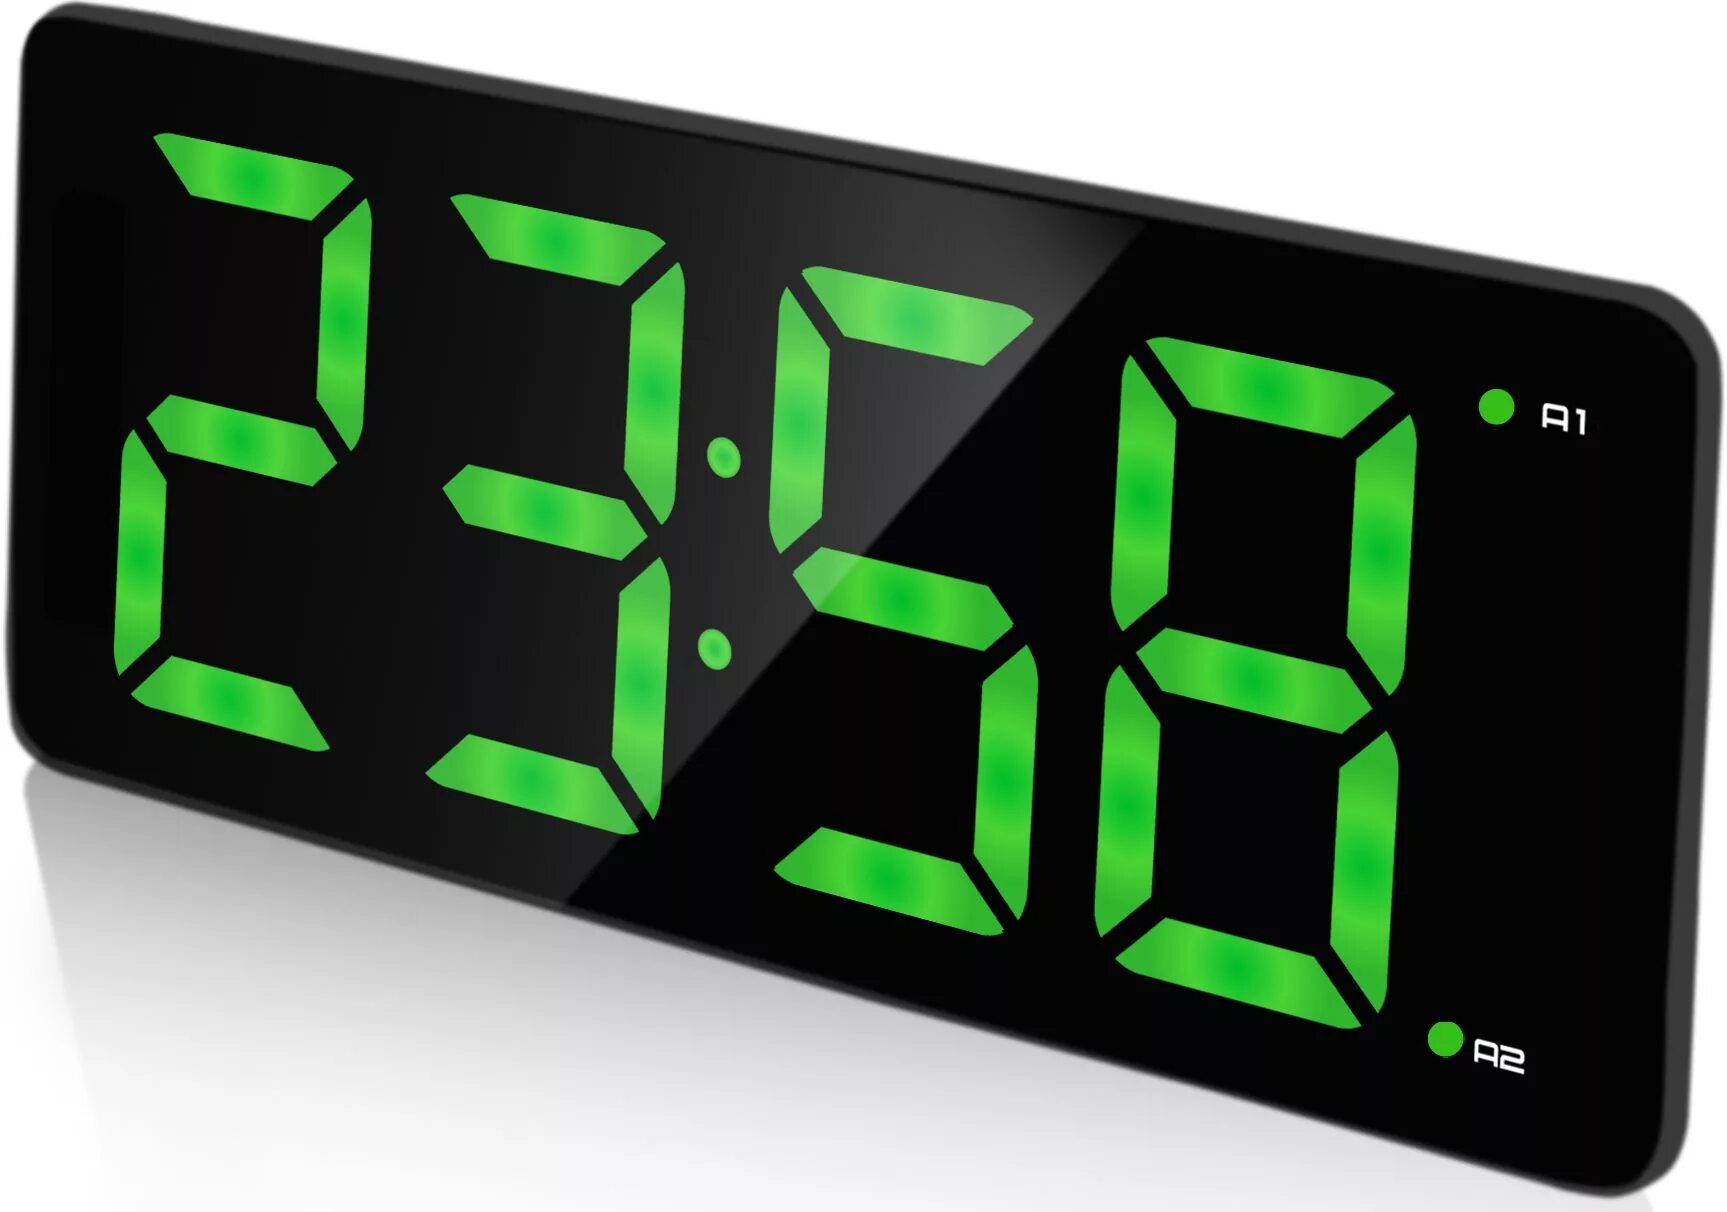 Настольные часы будильник с подсветкой. BVITECH часы BV 475. Электронные часы BVITECH, BV-475gkx. Радиобудильник BVITECH BV-499gpl. Часы BVITECH BV-475rkx.